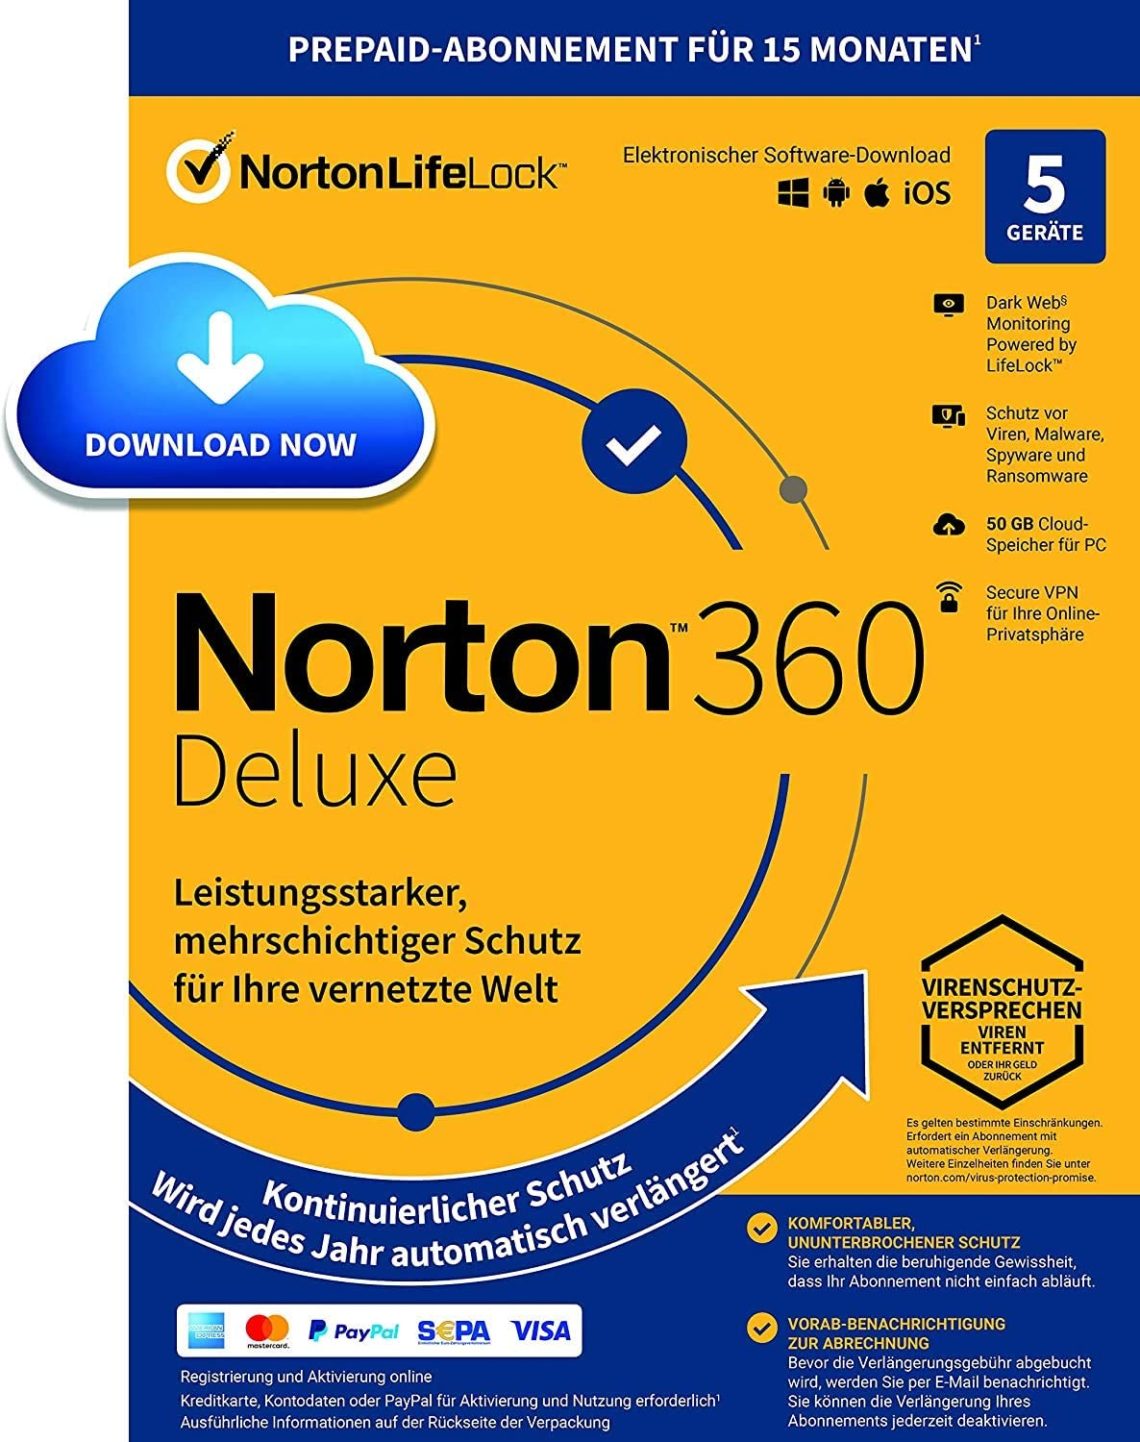 lifelock with norton 360